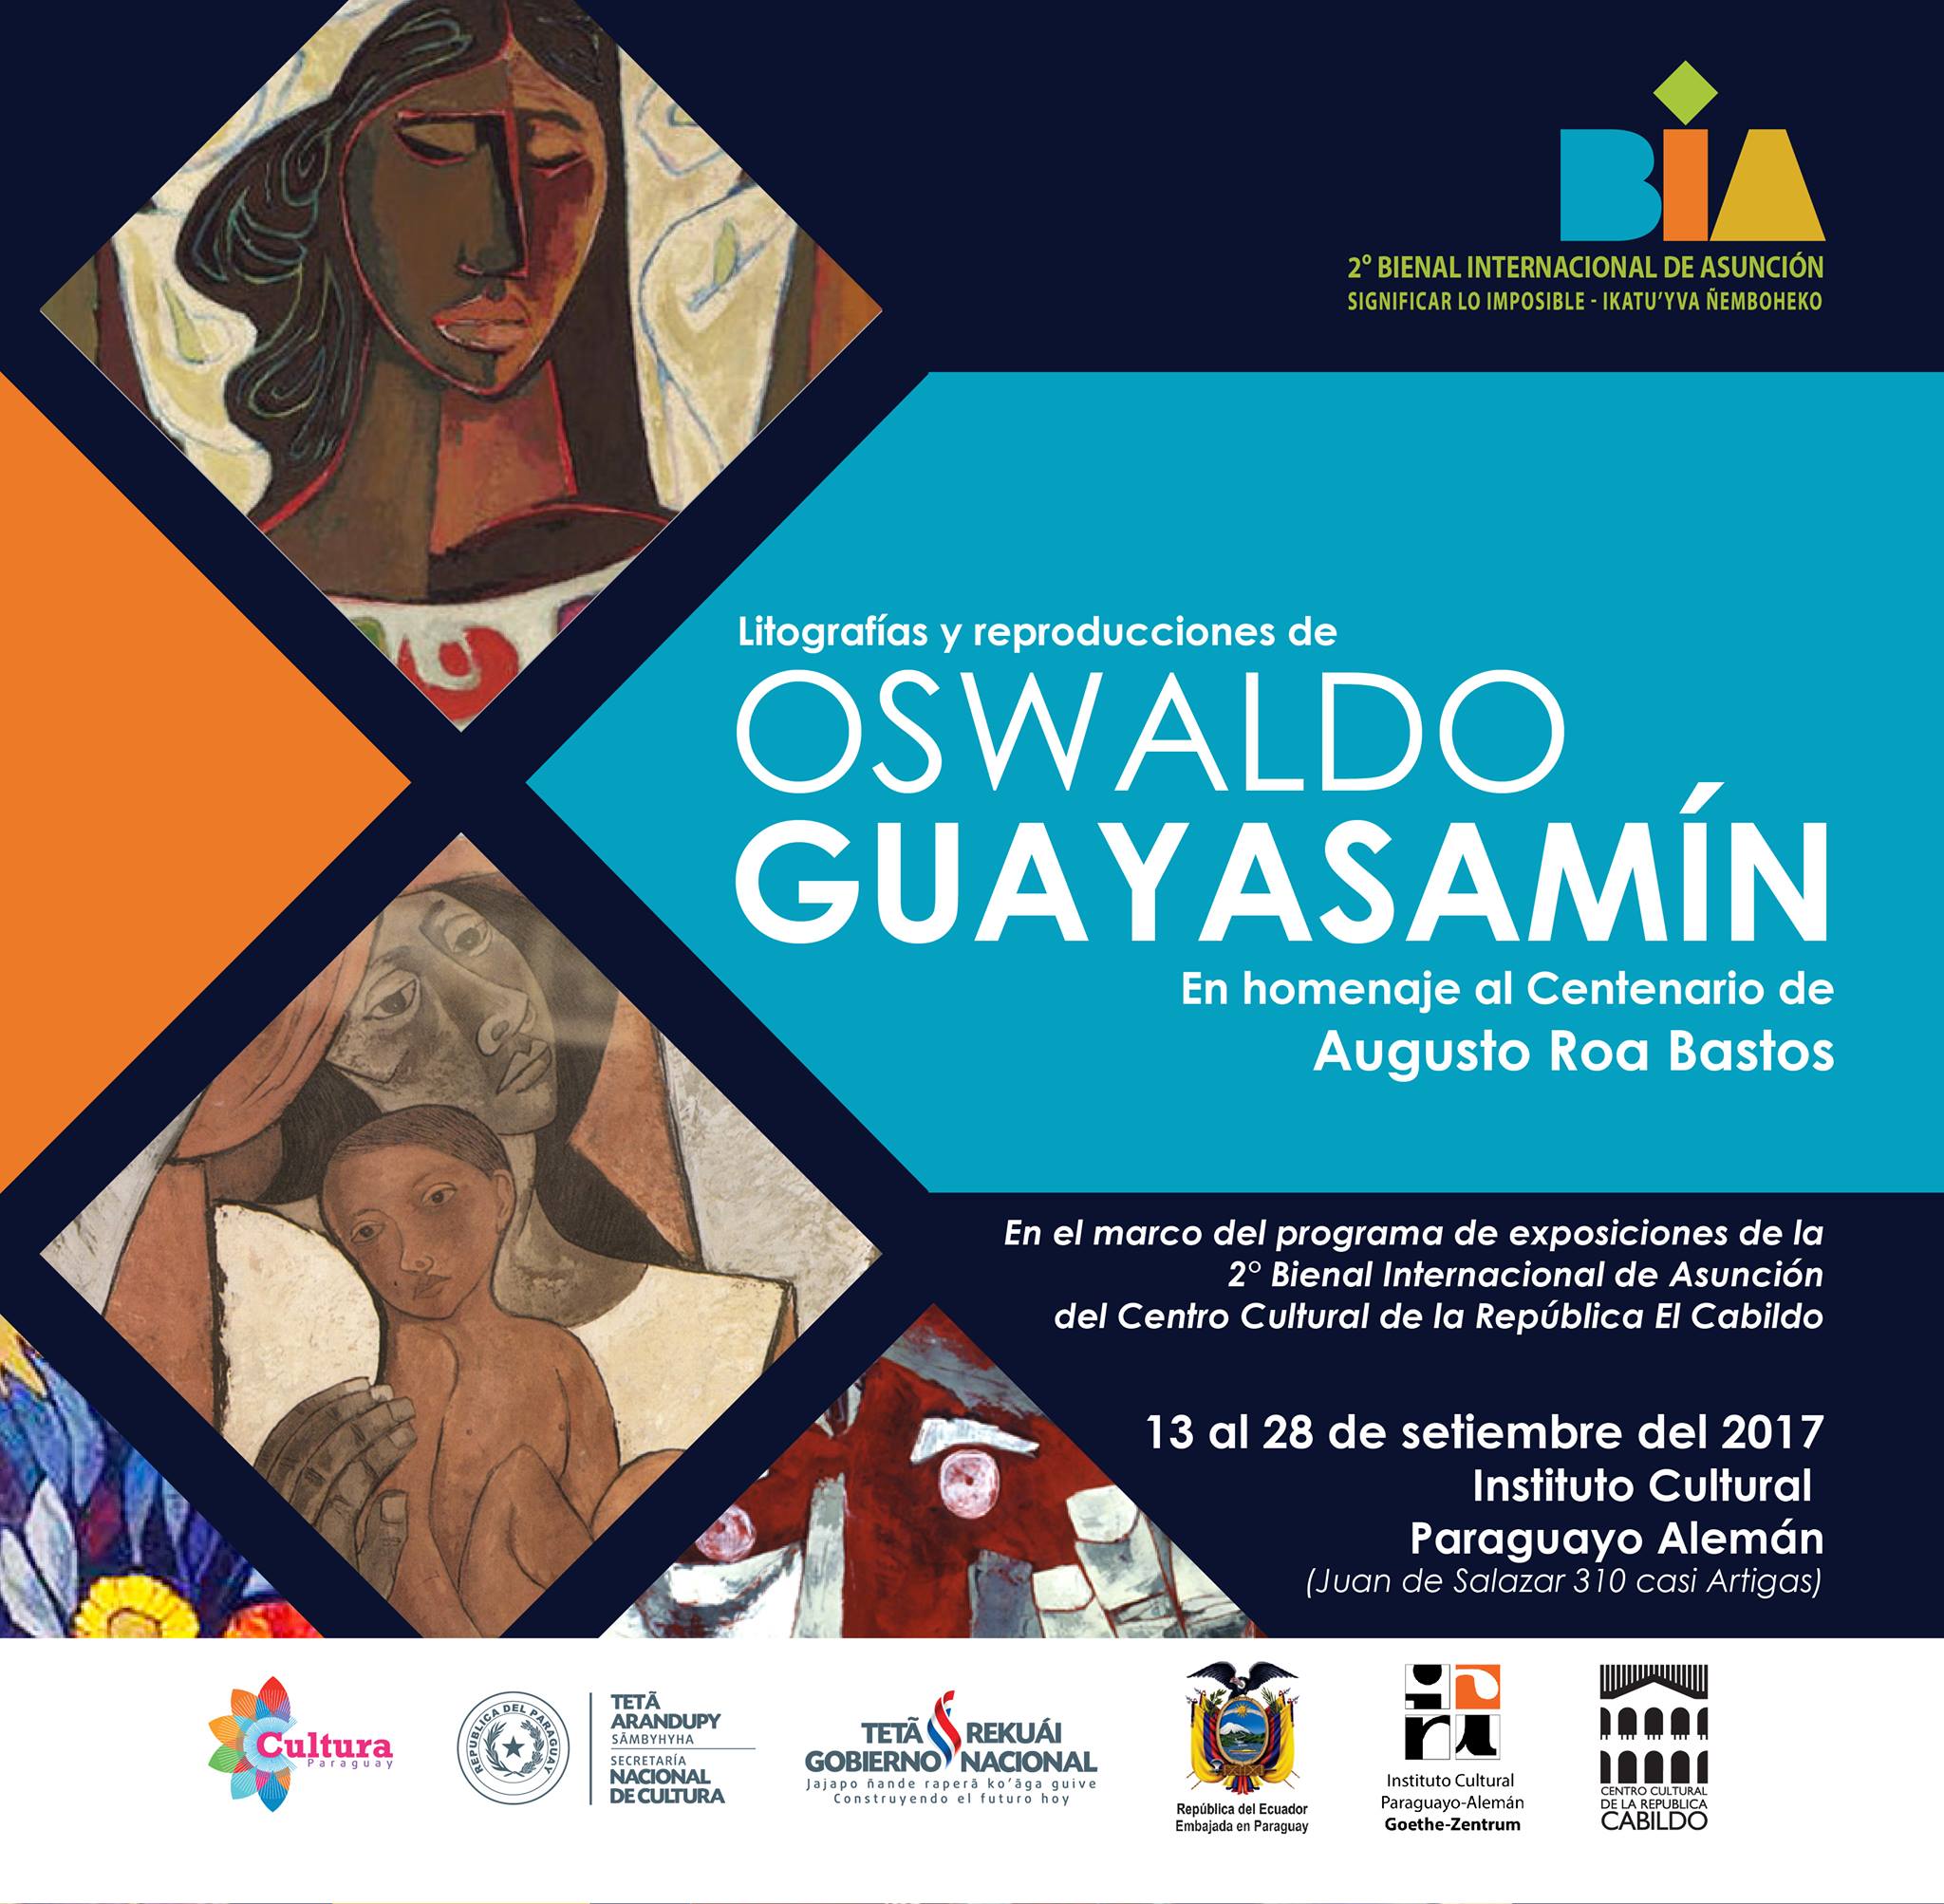 Obras de Oswaldo Guayasamín serán expuestas en el Instituto Cultural Paraguayo Alemán imagen